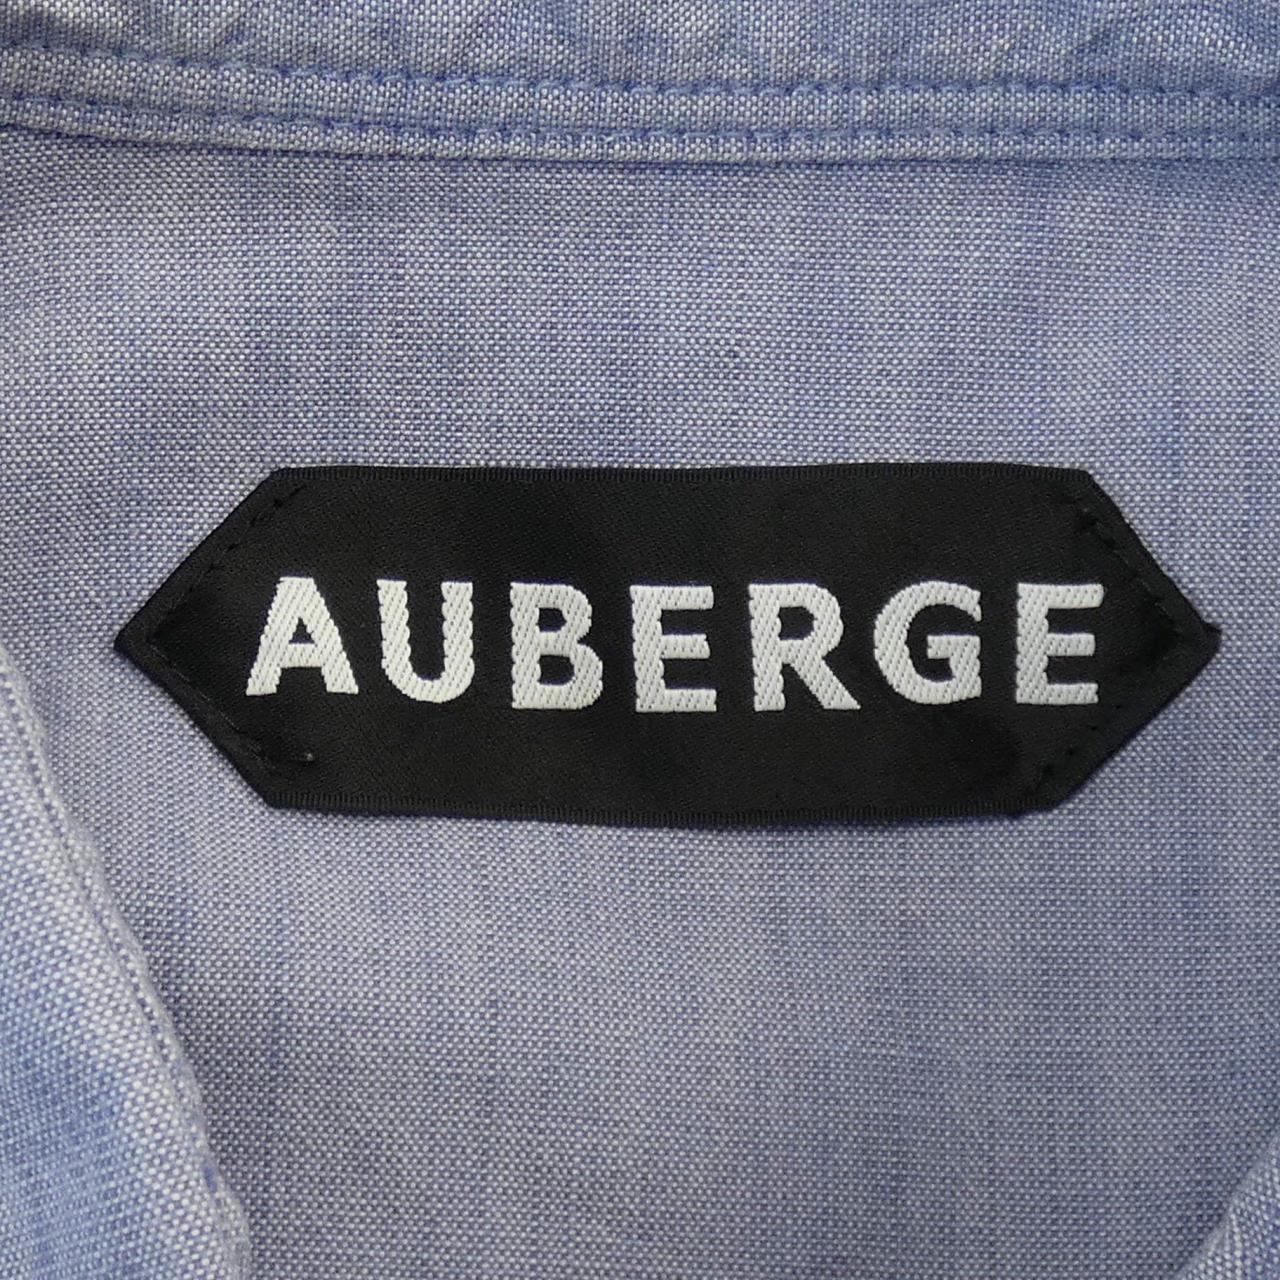 Auberge AUBERGE襯衫